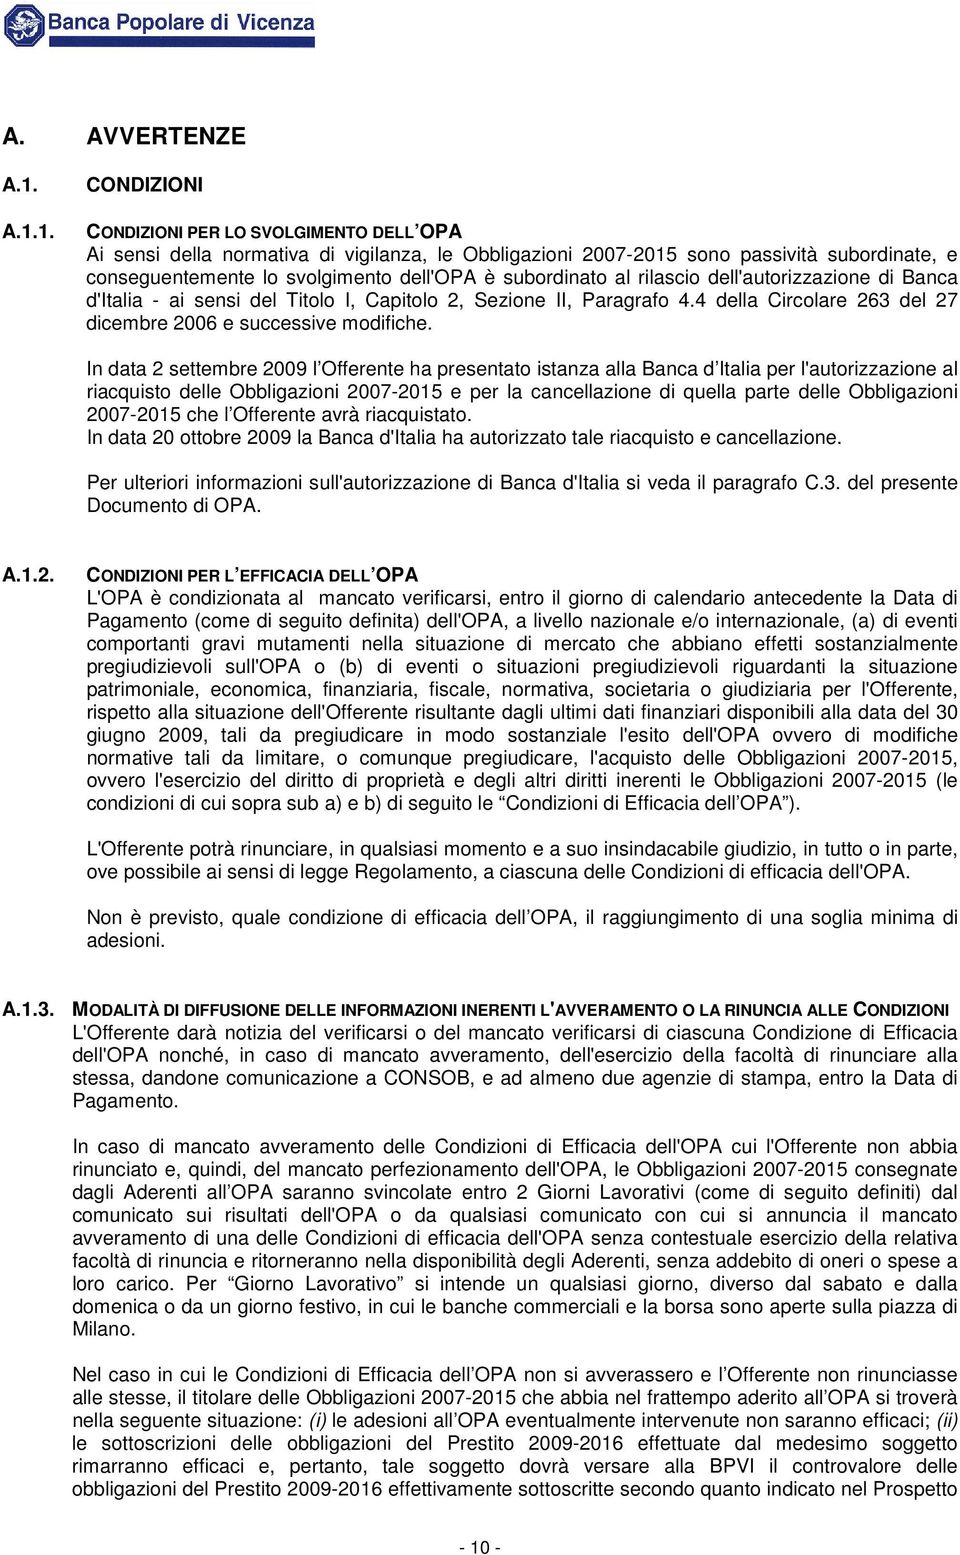 subordinato al rilascio dell'autorizzazione di Banca d'italia - ai sensi del Titolo I, Capitolo 2, Sezione II, Paragrafo 4.4 della Circolare 263 del 27 dicembre 2006 e successive modifiche.